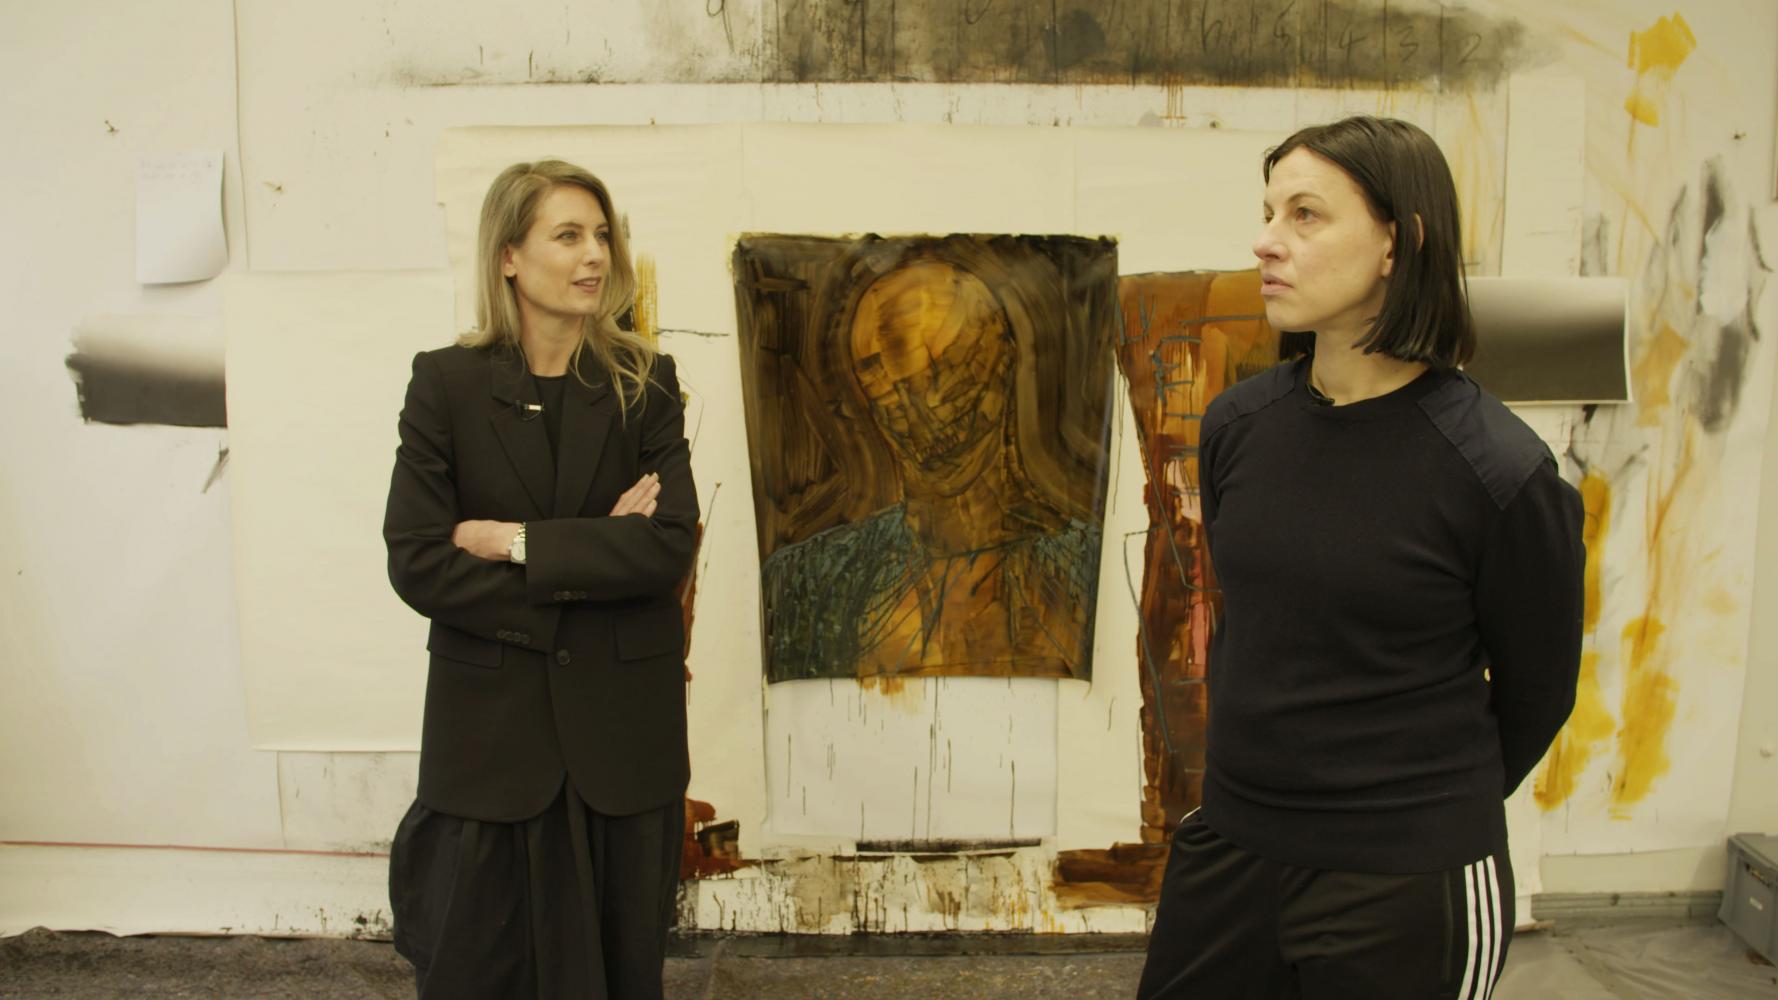   Silke Hohmann mit der Künstlerin Anne Imhof in deren Berliner Atelier